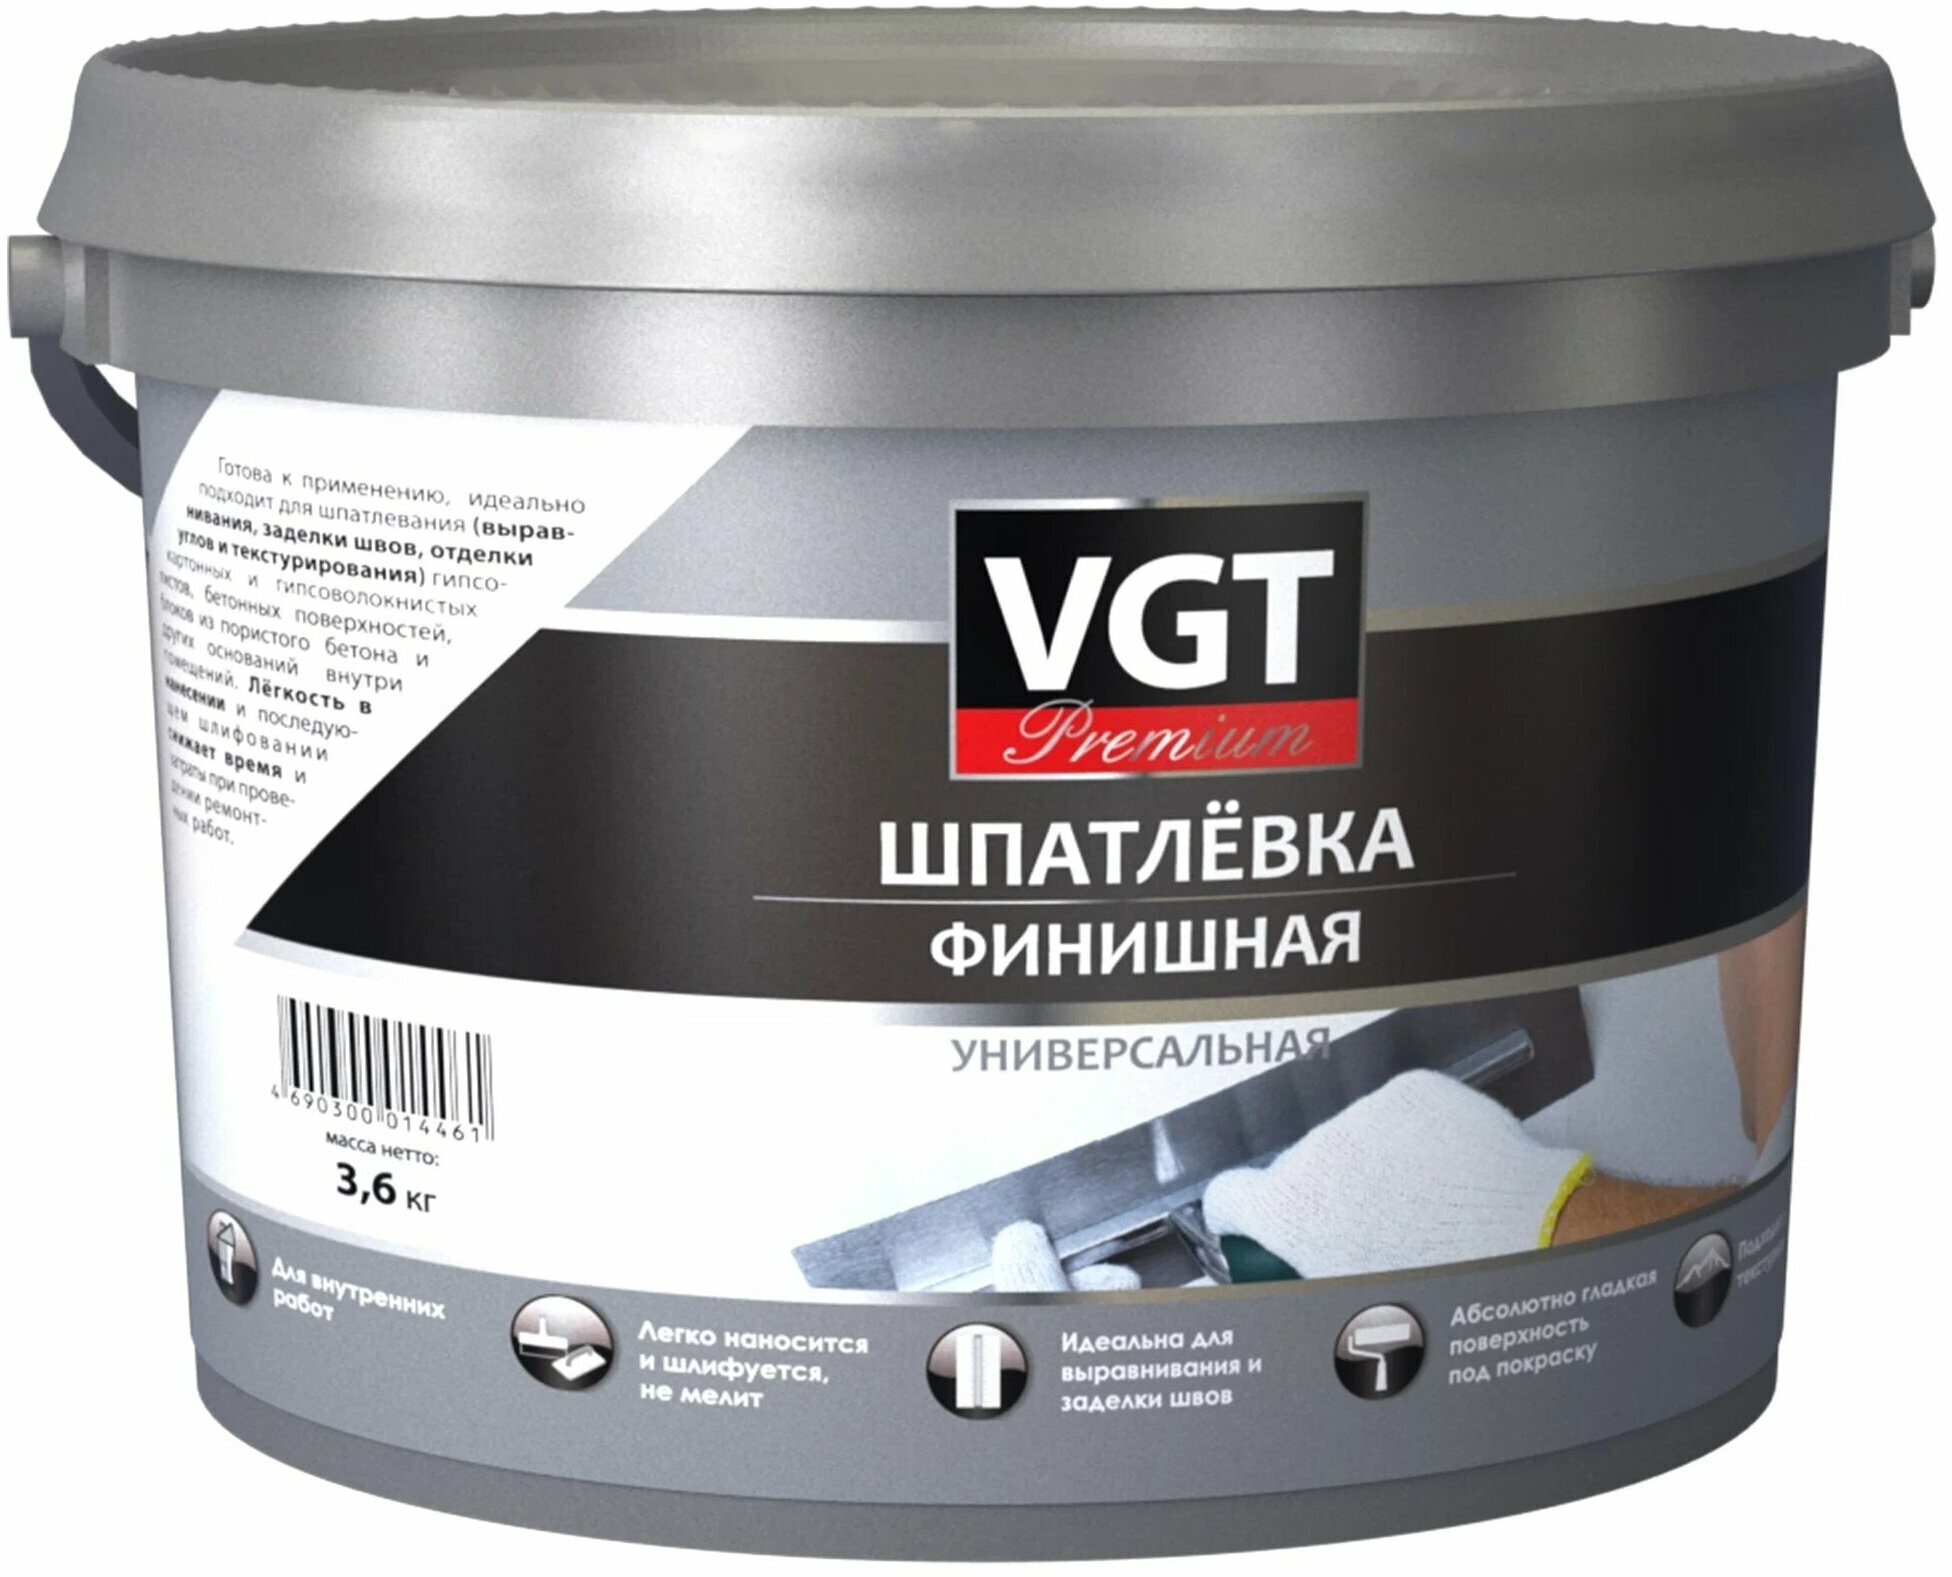 Шпатлевка VGT Premium финишная универсальная, белый, 3.6 кг